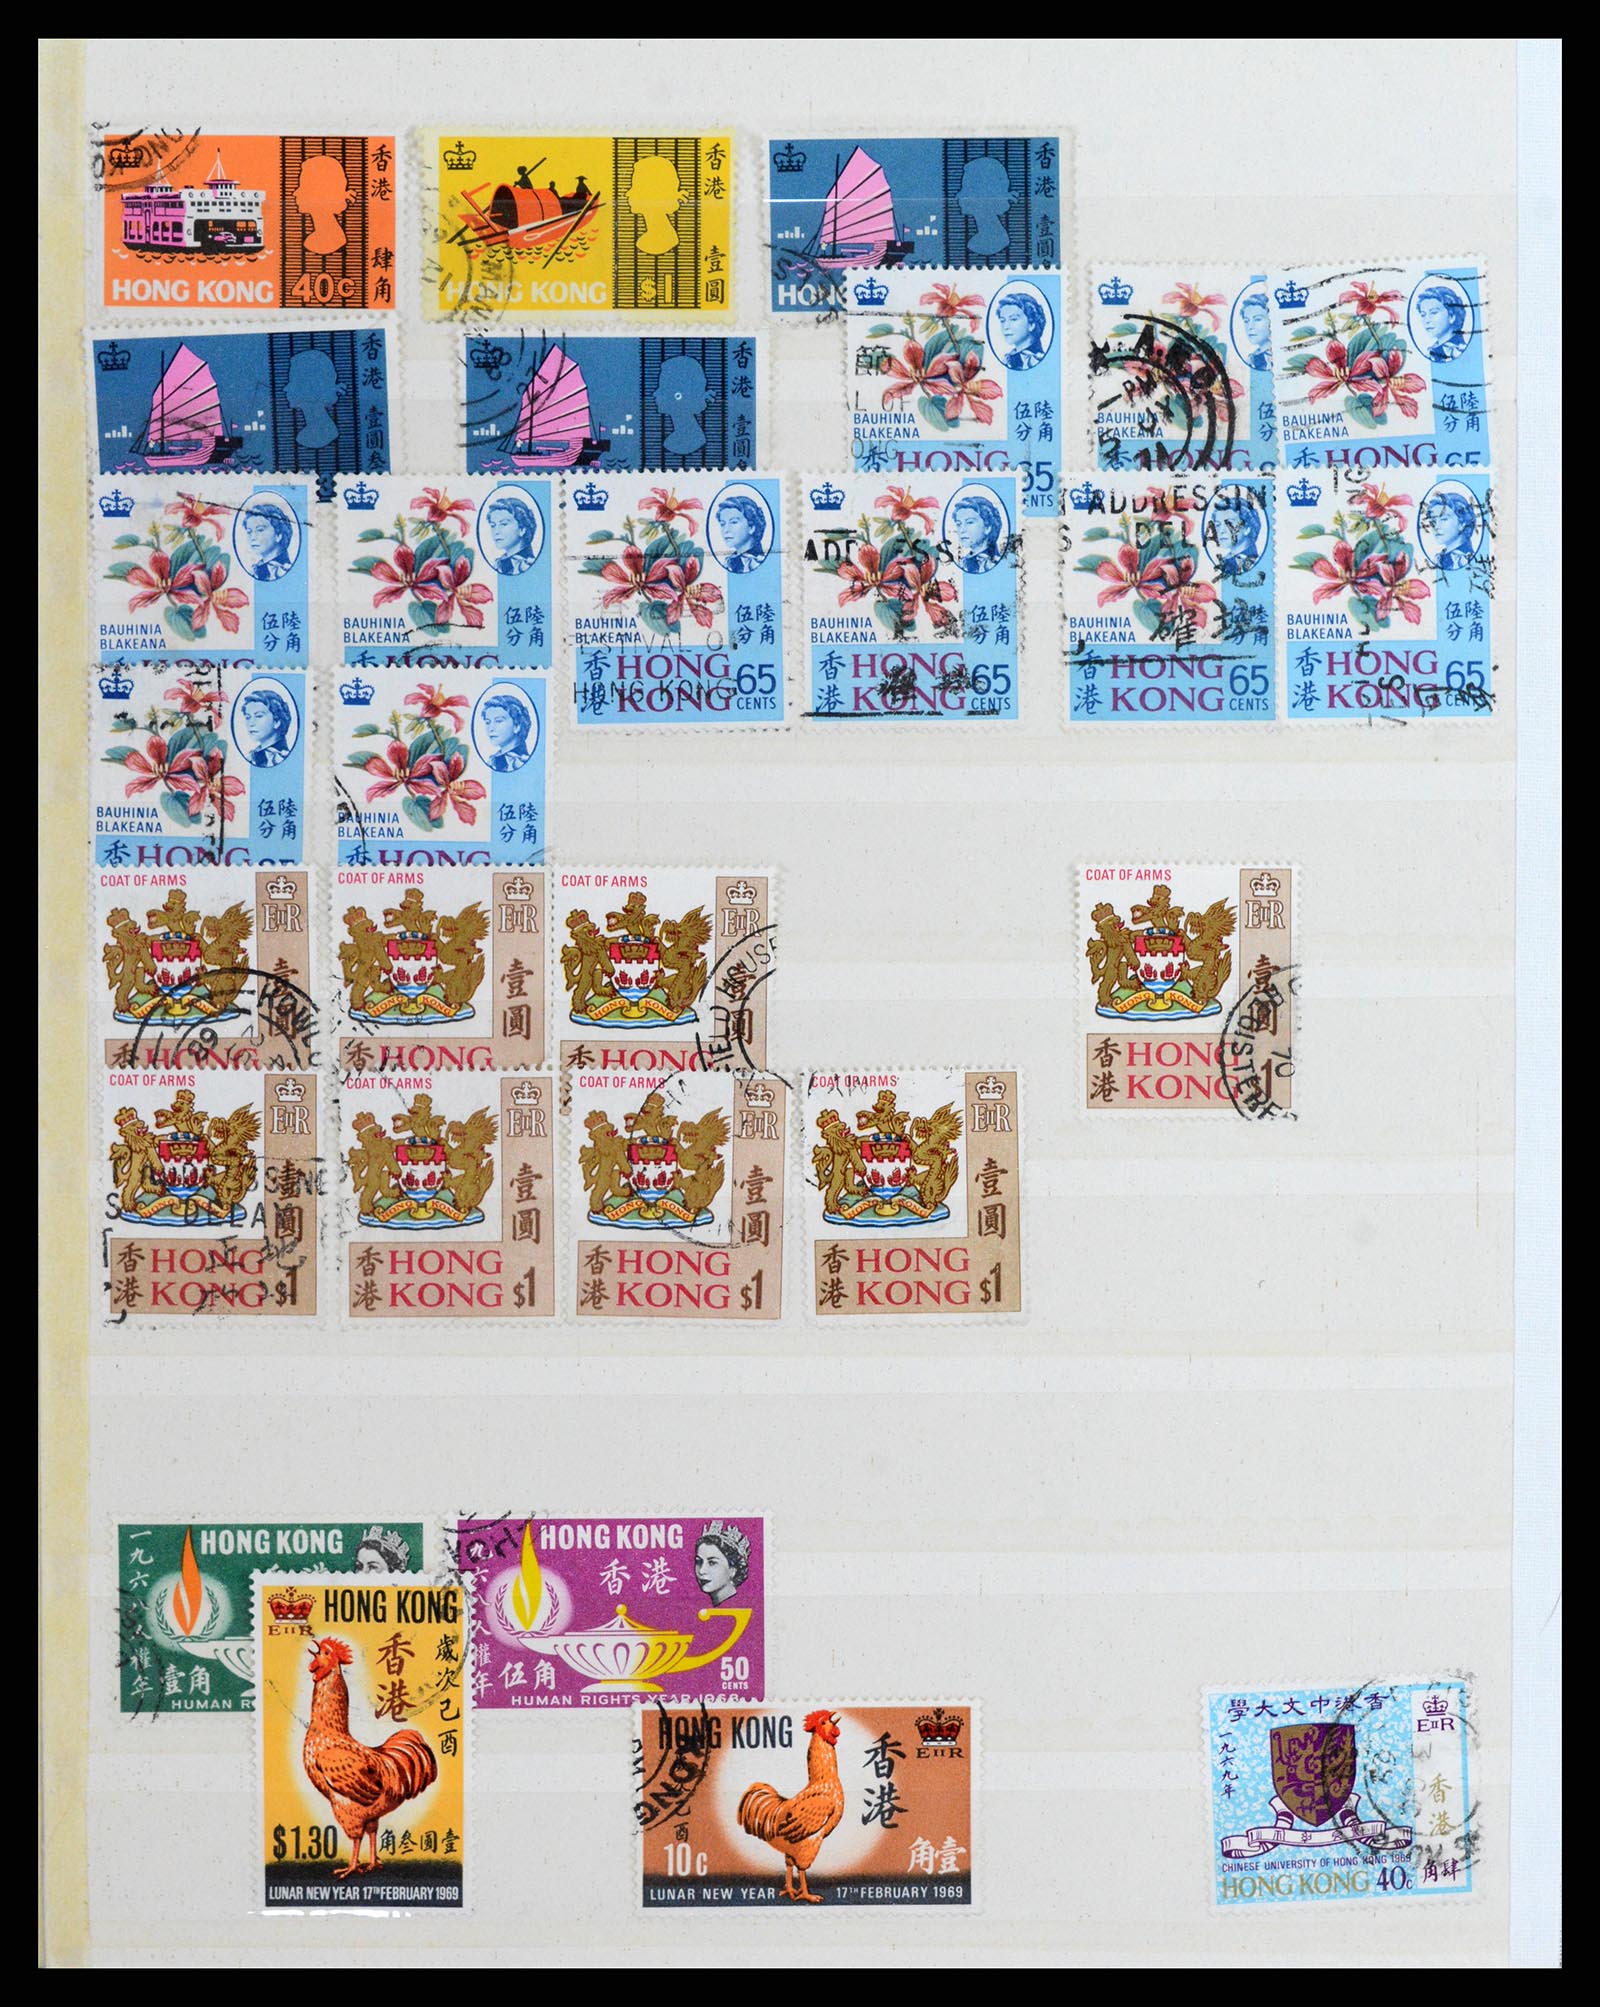 37358 020 - Stamp collection 37358 Hong Kong 1861-1997.